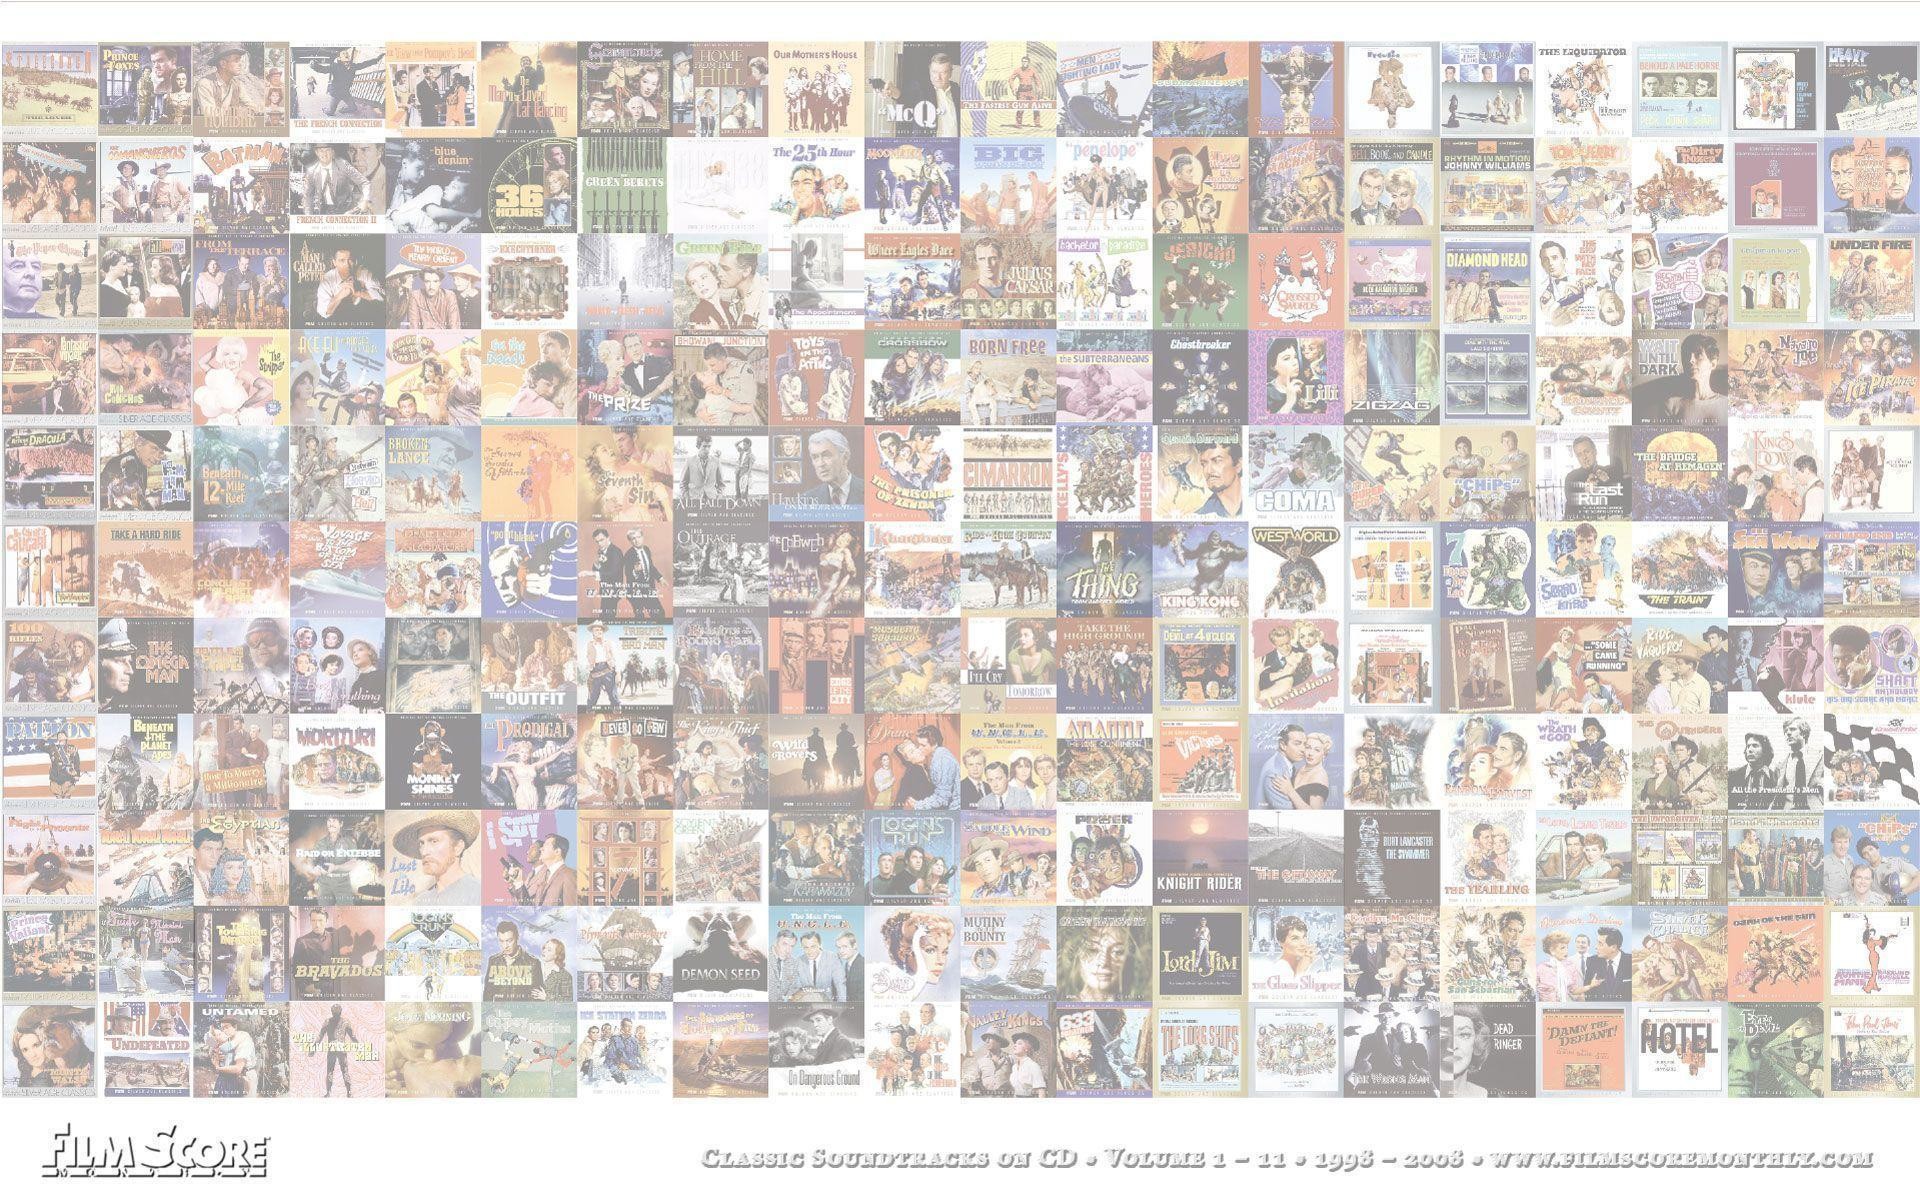 1920x1200 Film Score Monthly: Desktop Wallpaper